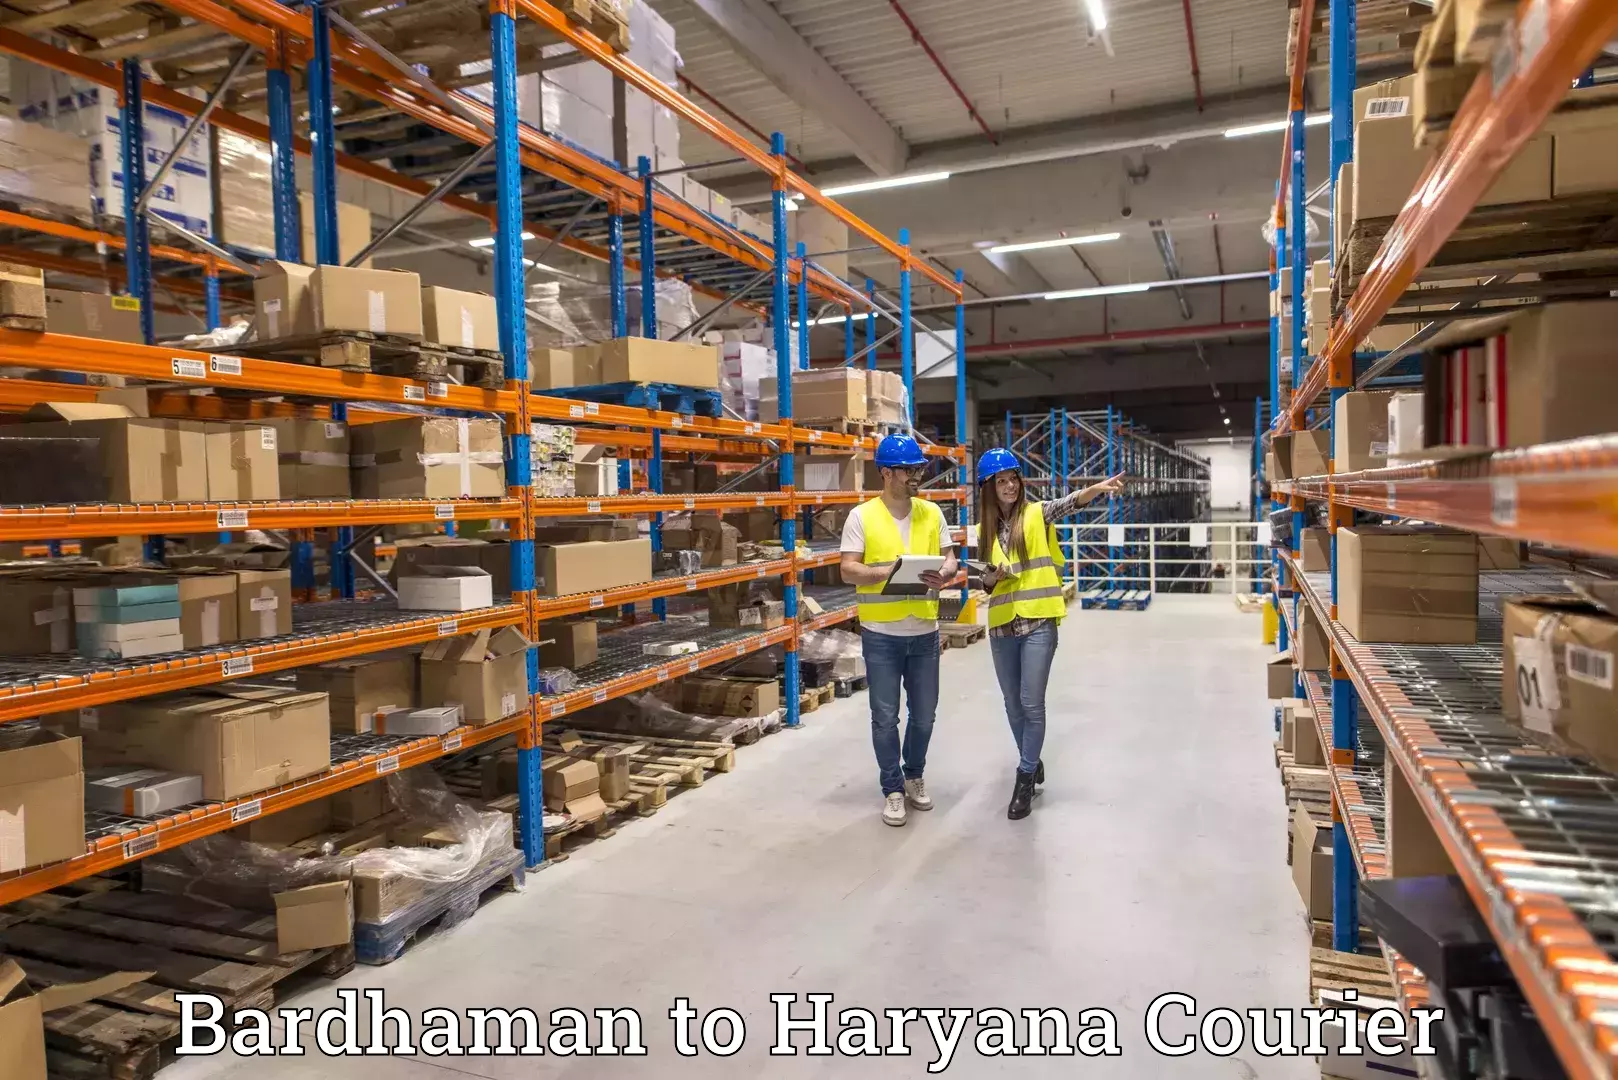 Expedited shipping solutions Bardhaman to Chaudhary Charan Singh Haryana Agricultural University Hisar